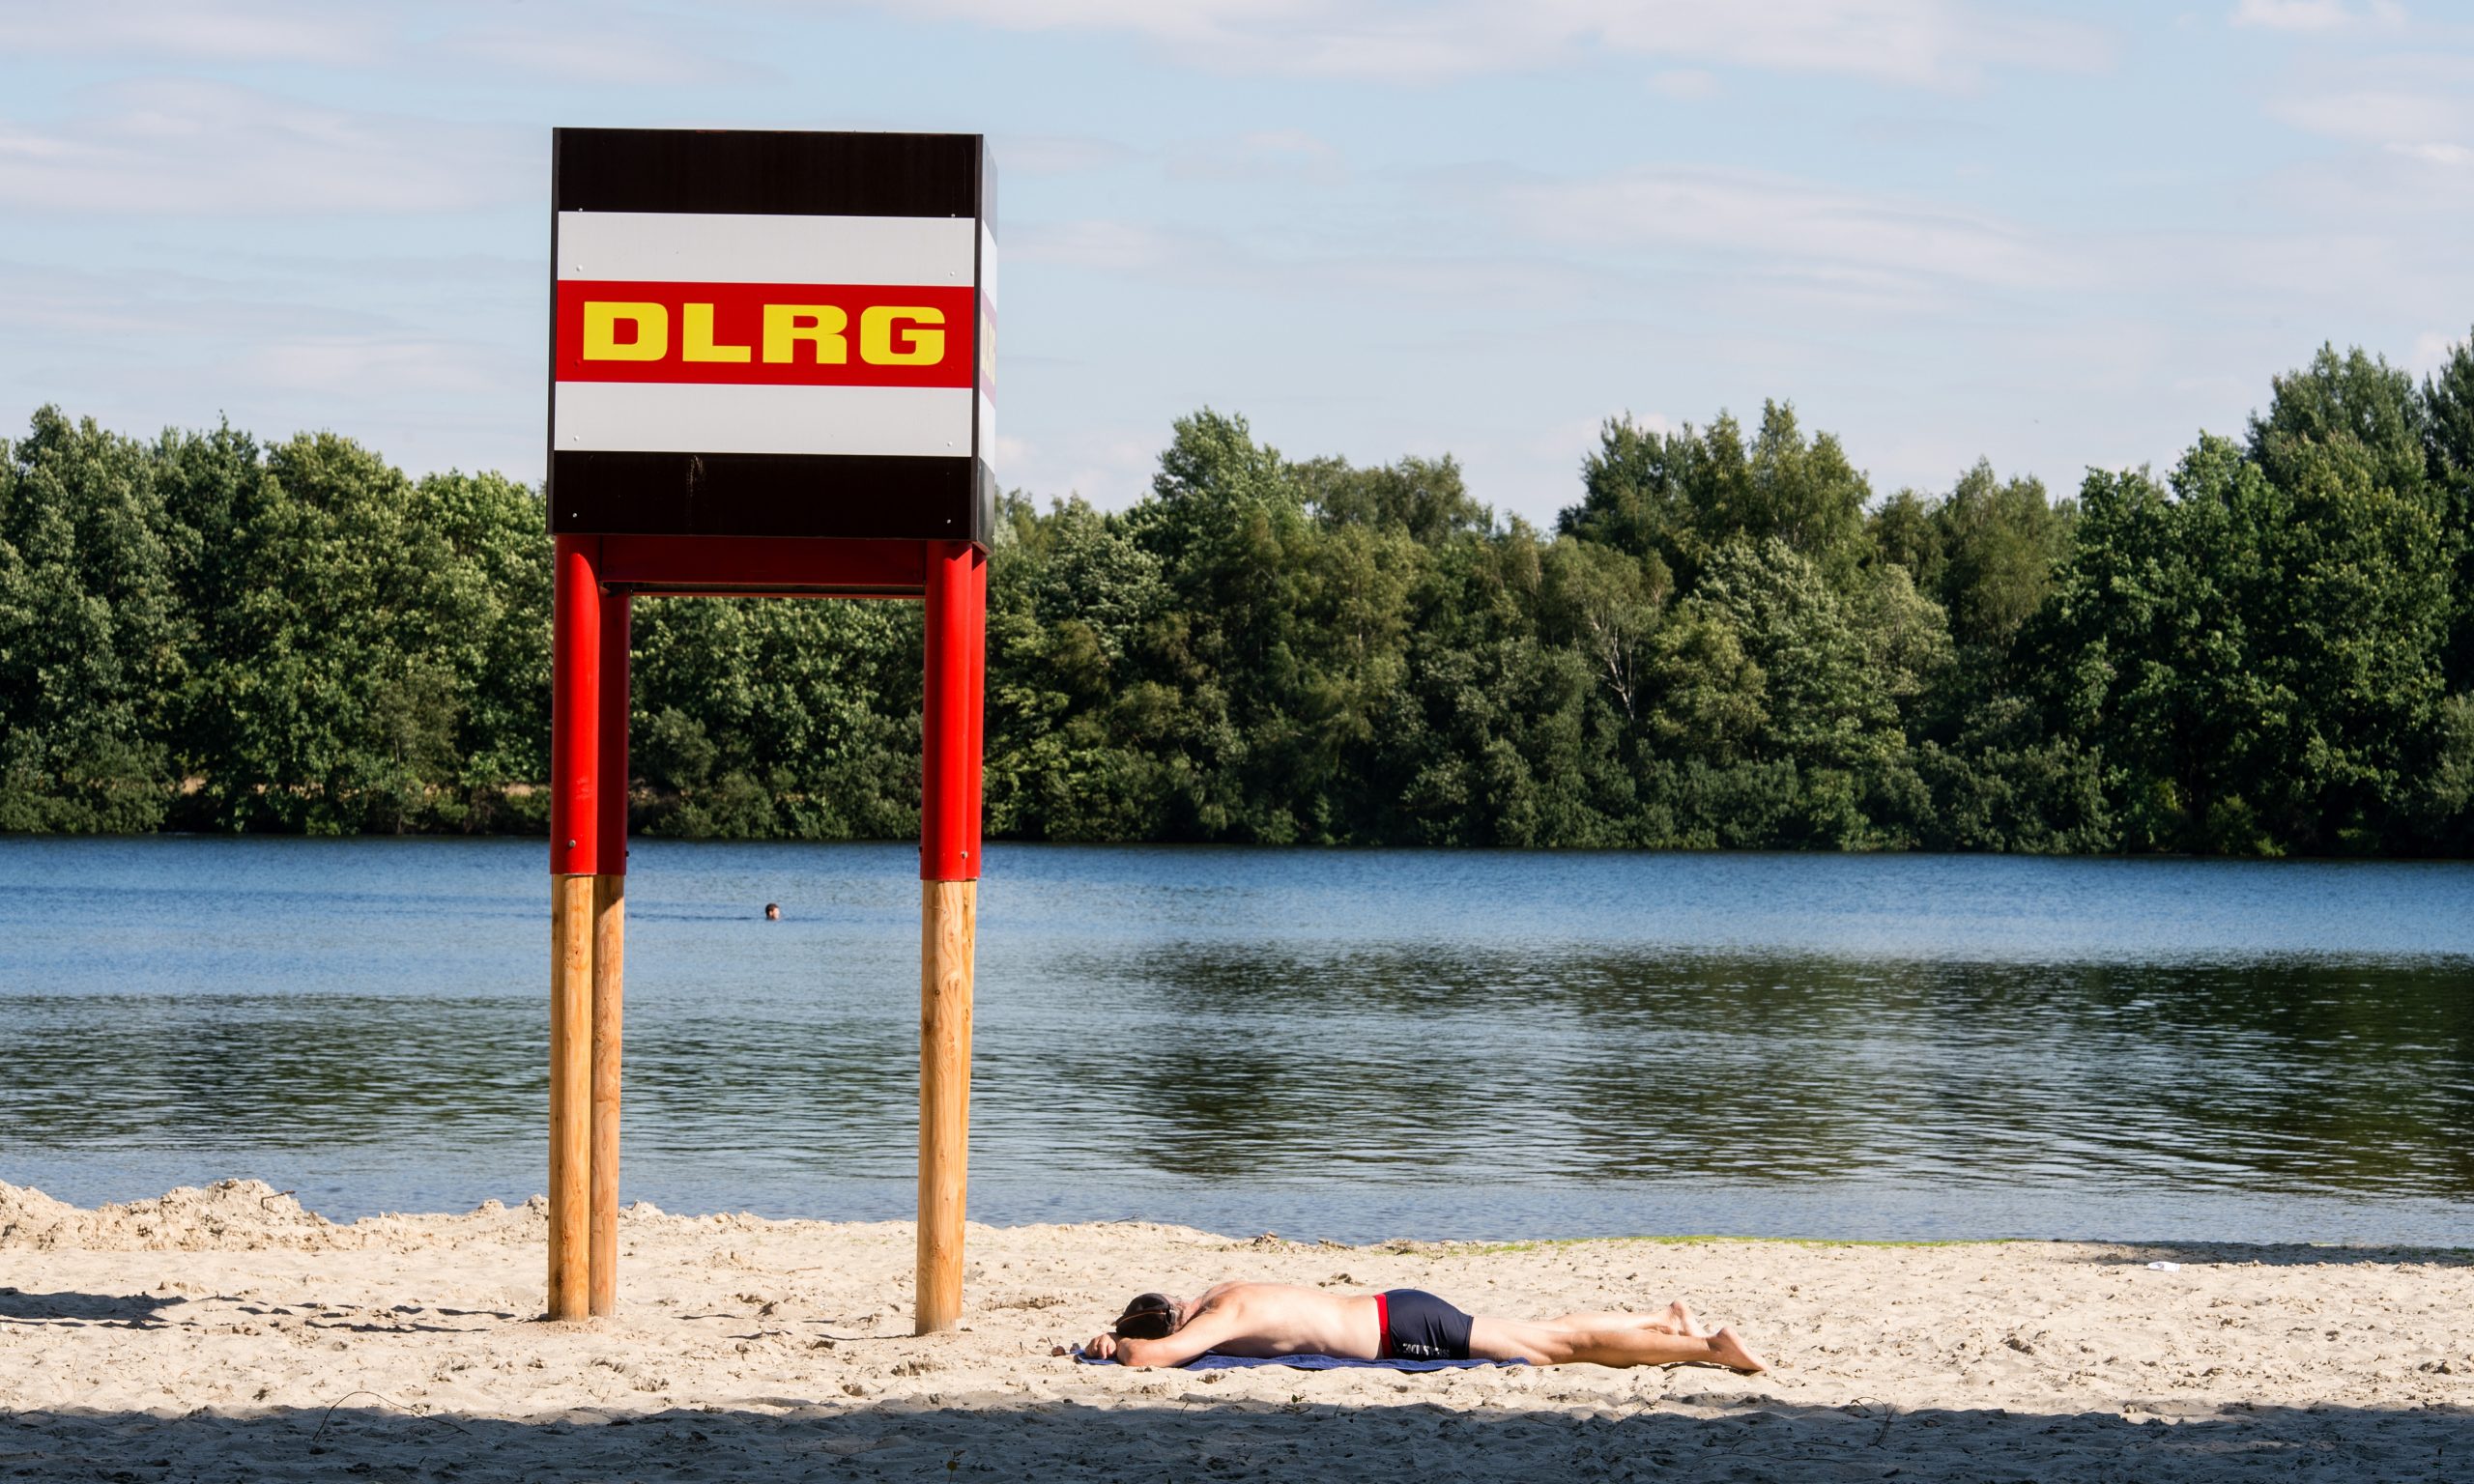 Mann liegt unter einem DLRG-Turm an Ufer eines Sees am Strand.